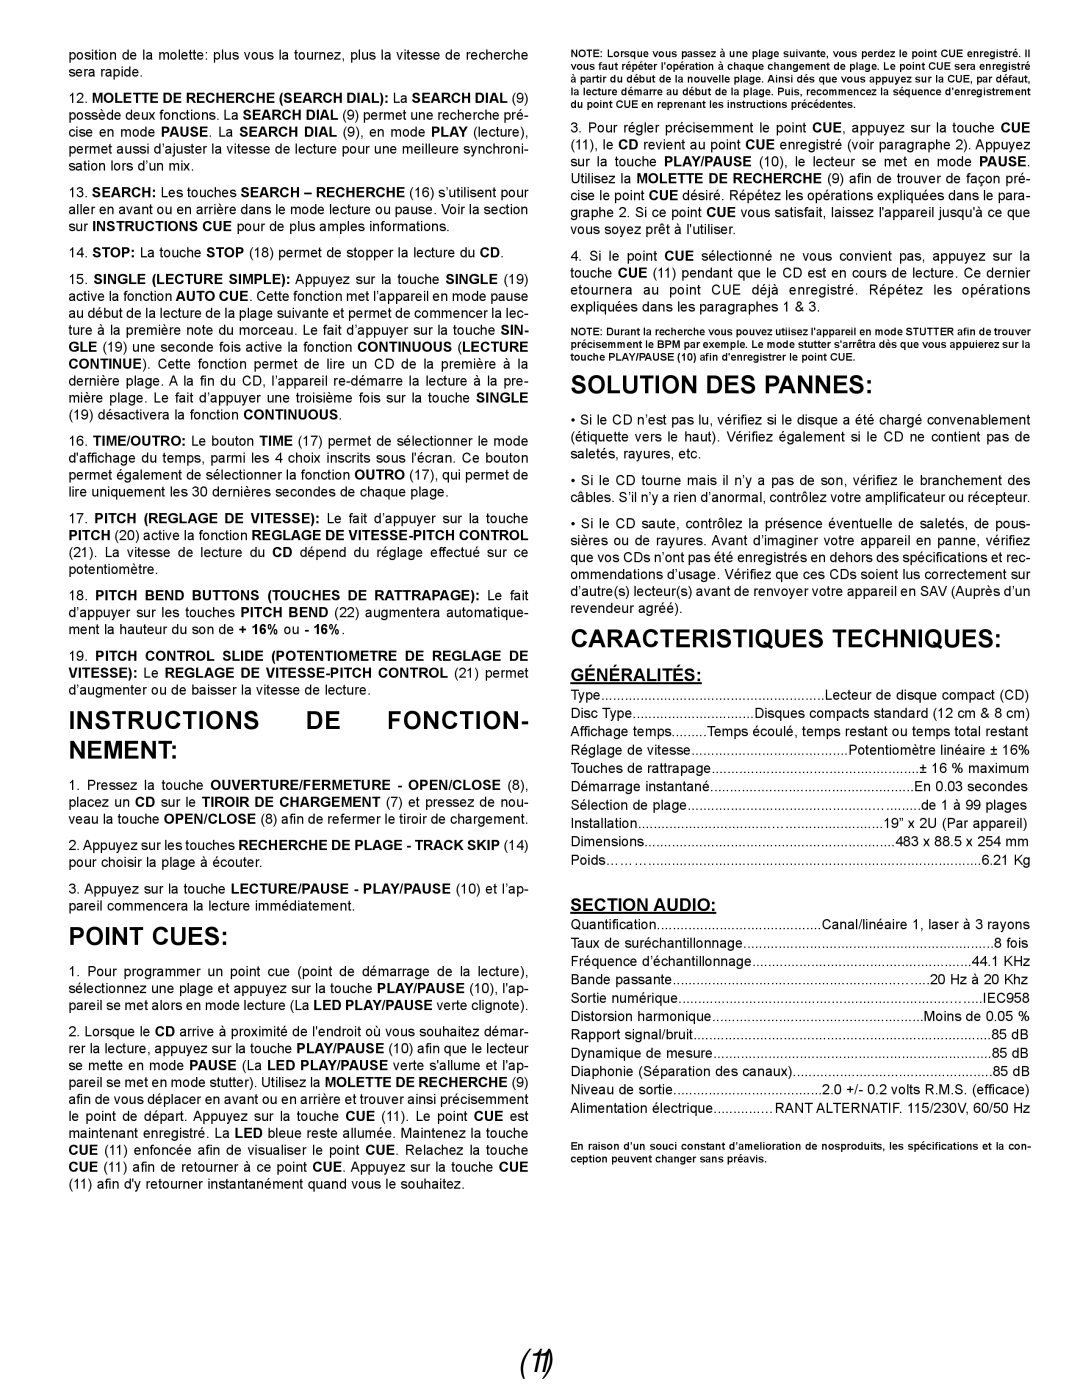 Gemini CDX-02G Instructions De Fonction- Nement, Point Cues, Solution Des Pannes, Caracteristiques Techniques, Généralités 